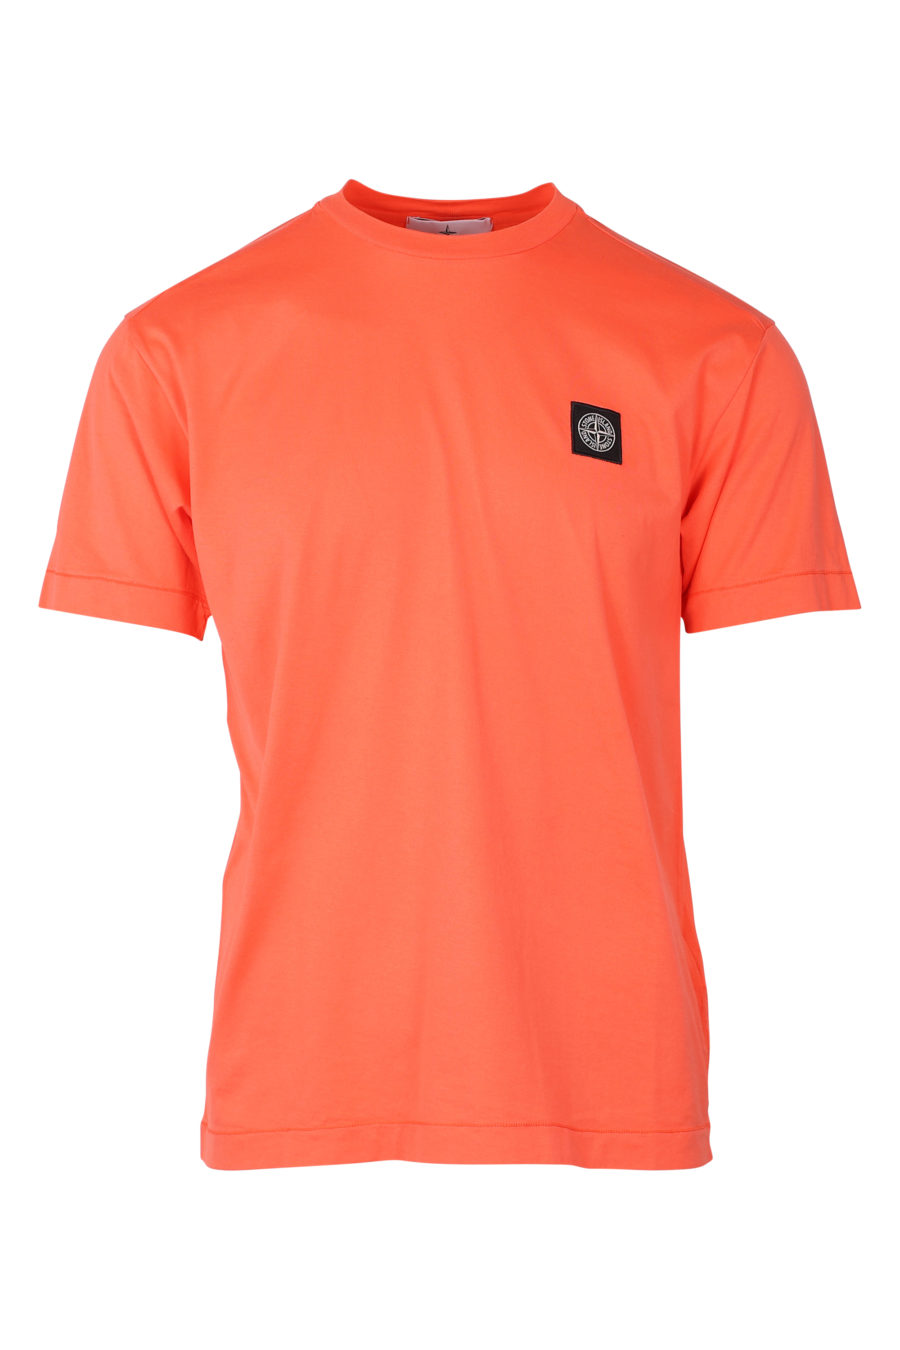 Camiseta de color coral con parche - IMG 9364